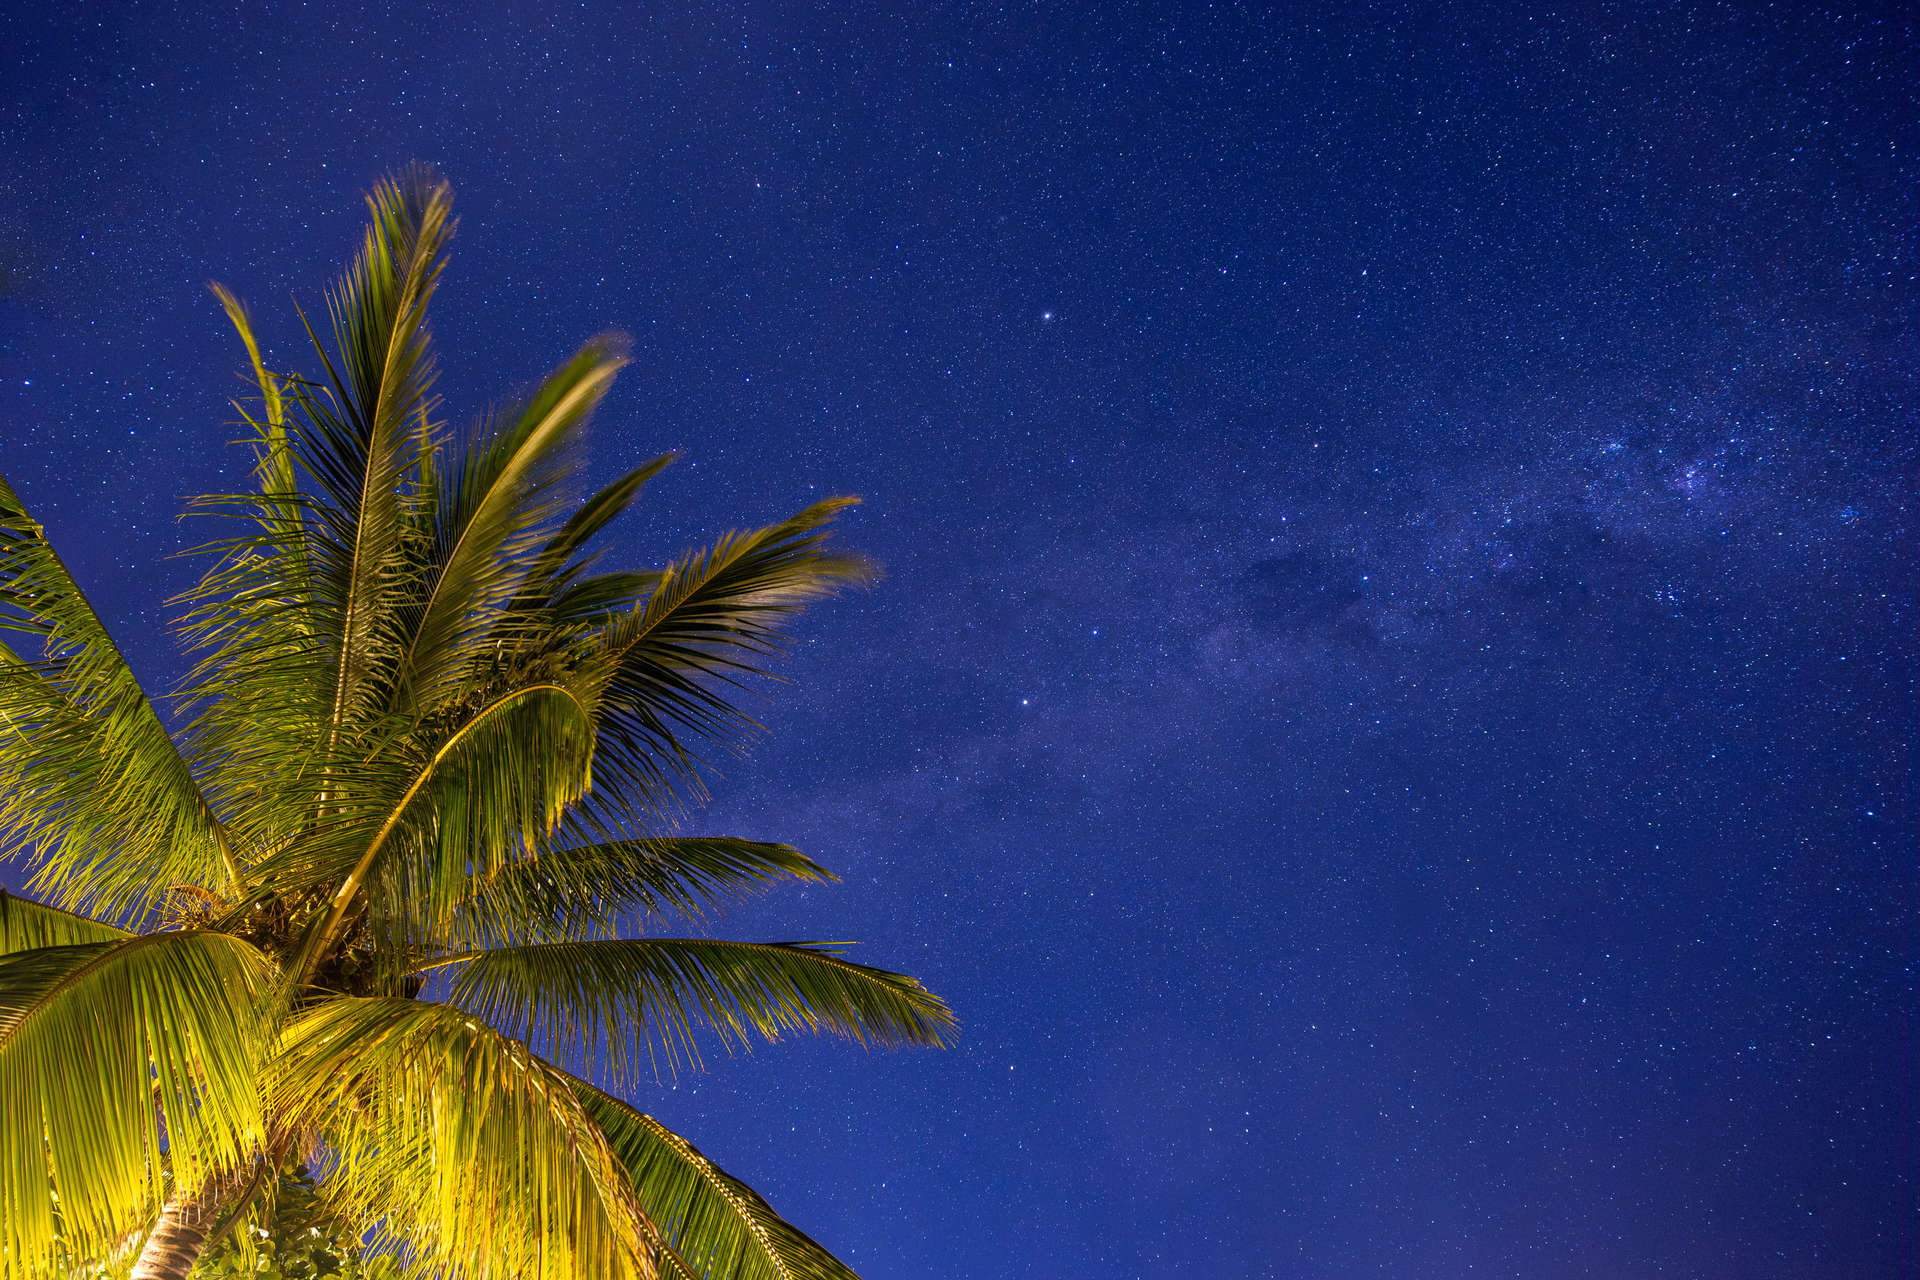 Mauritian night sky